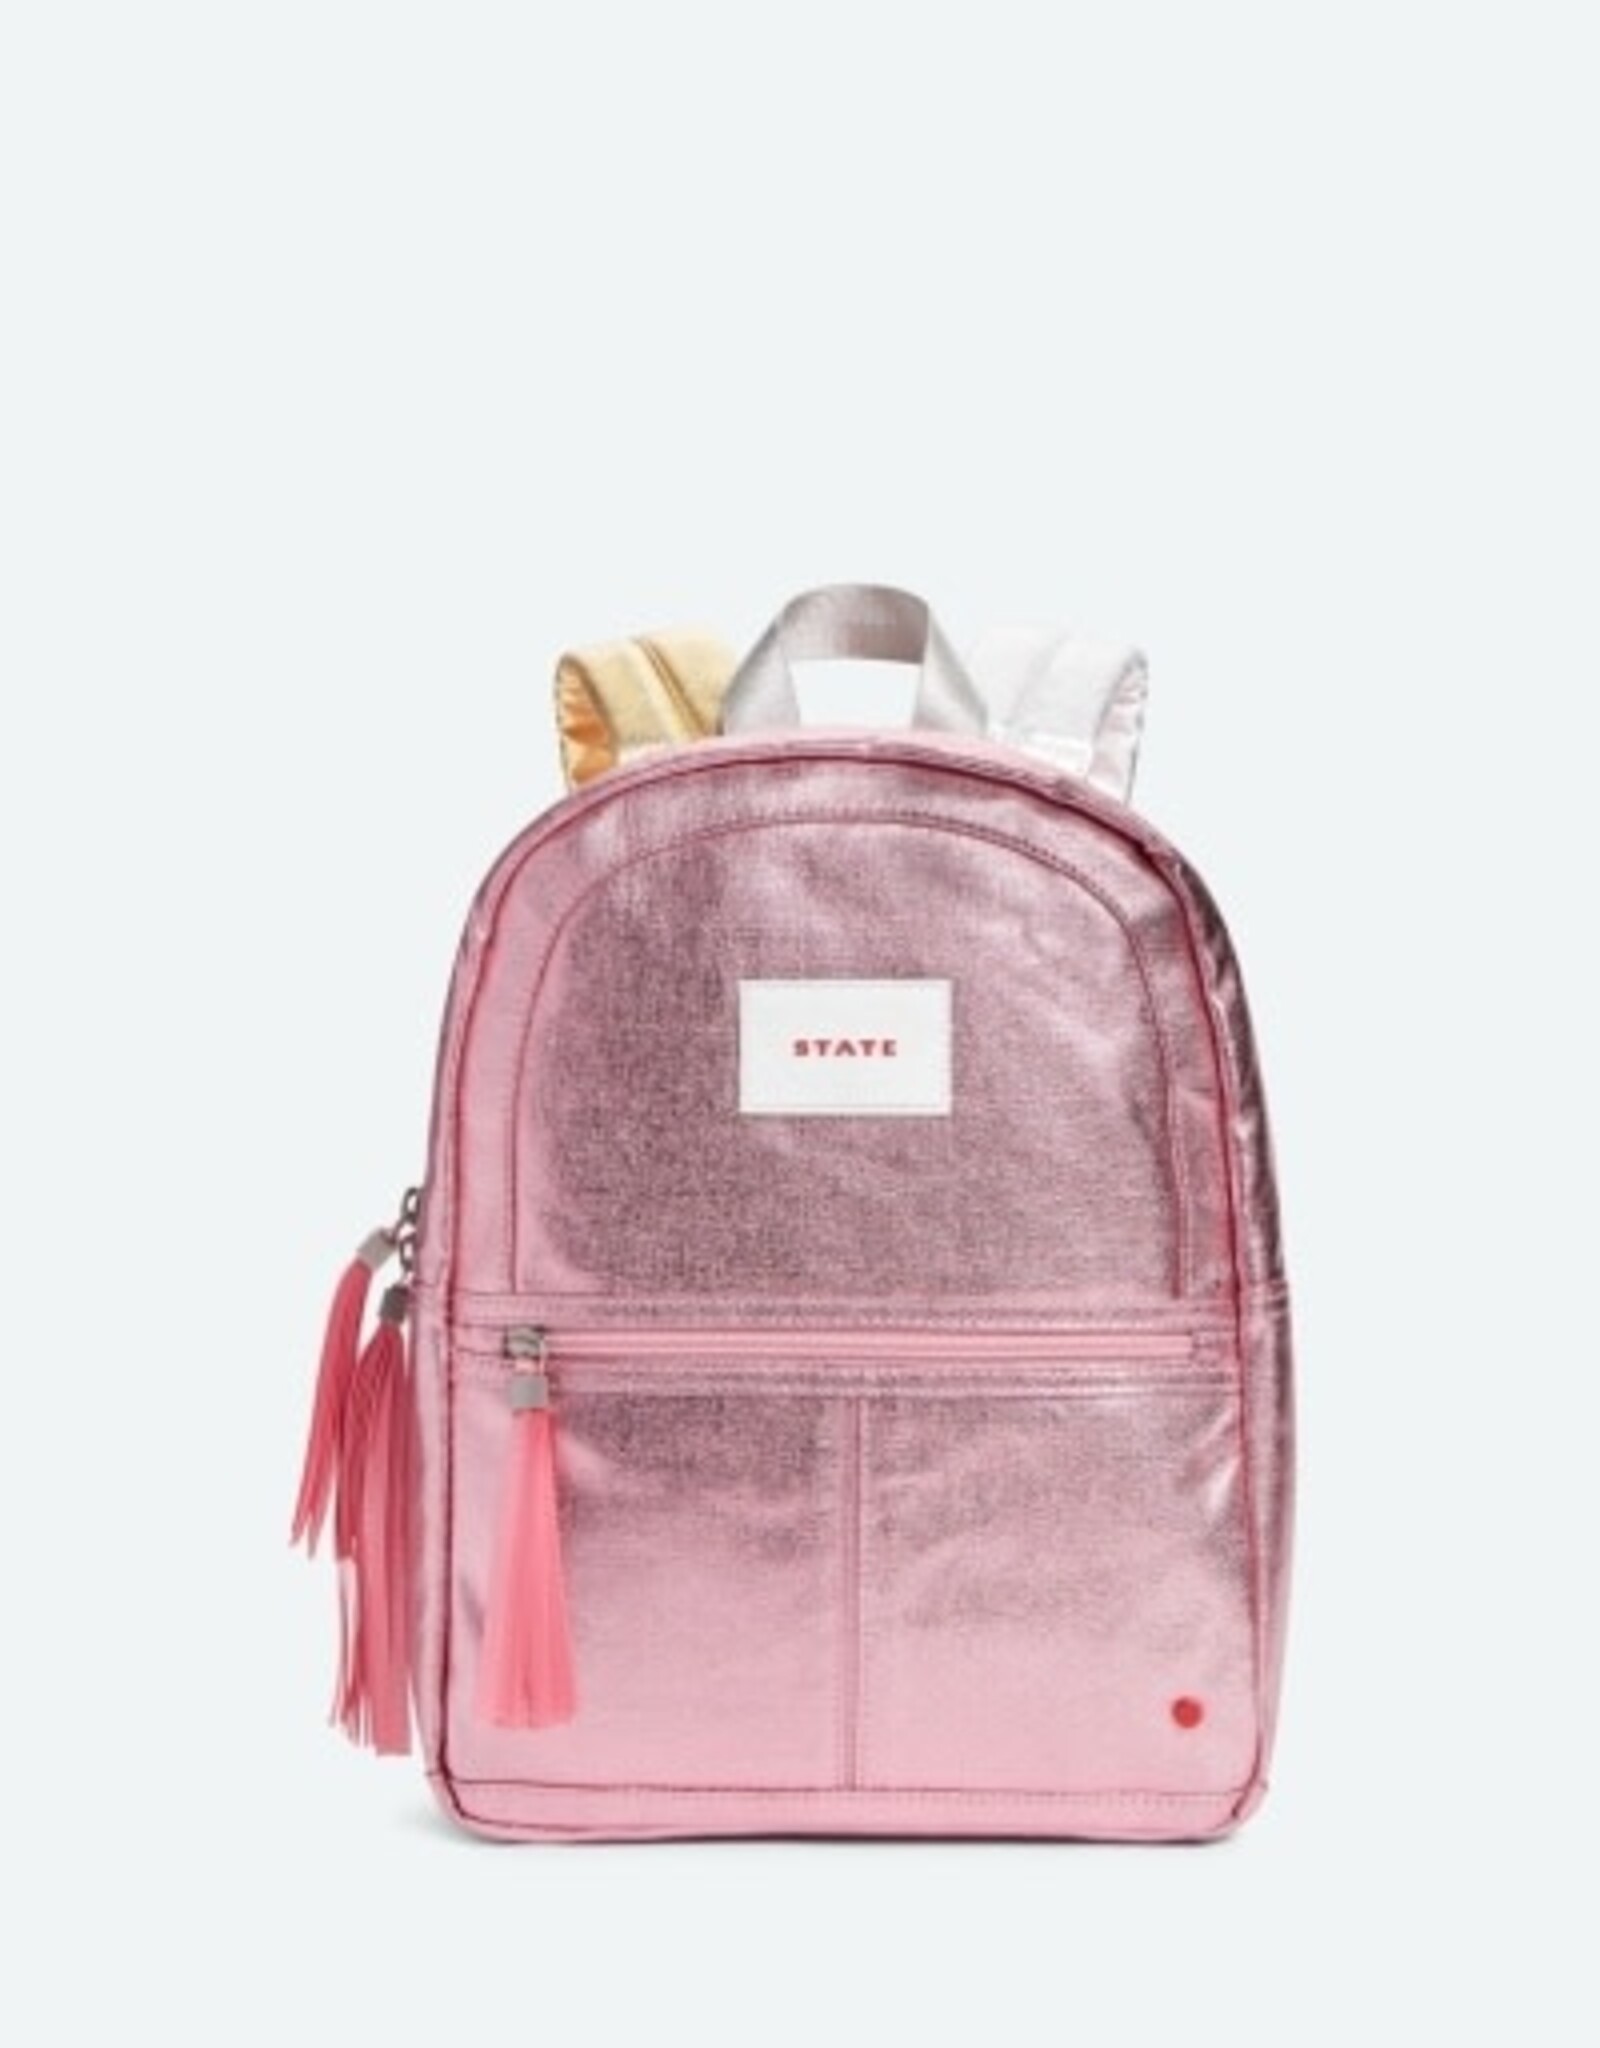 State Bags Kane Kids Mini Travel Backpack Pink/Silver Metallic